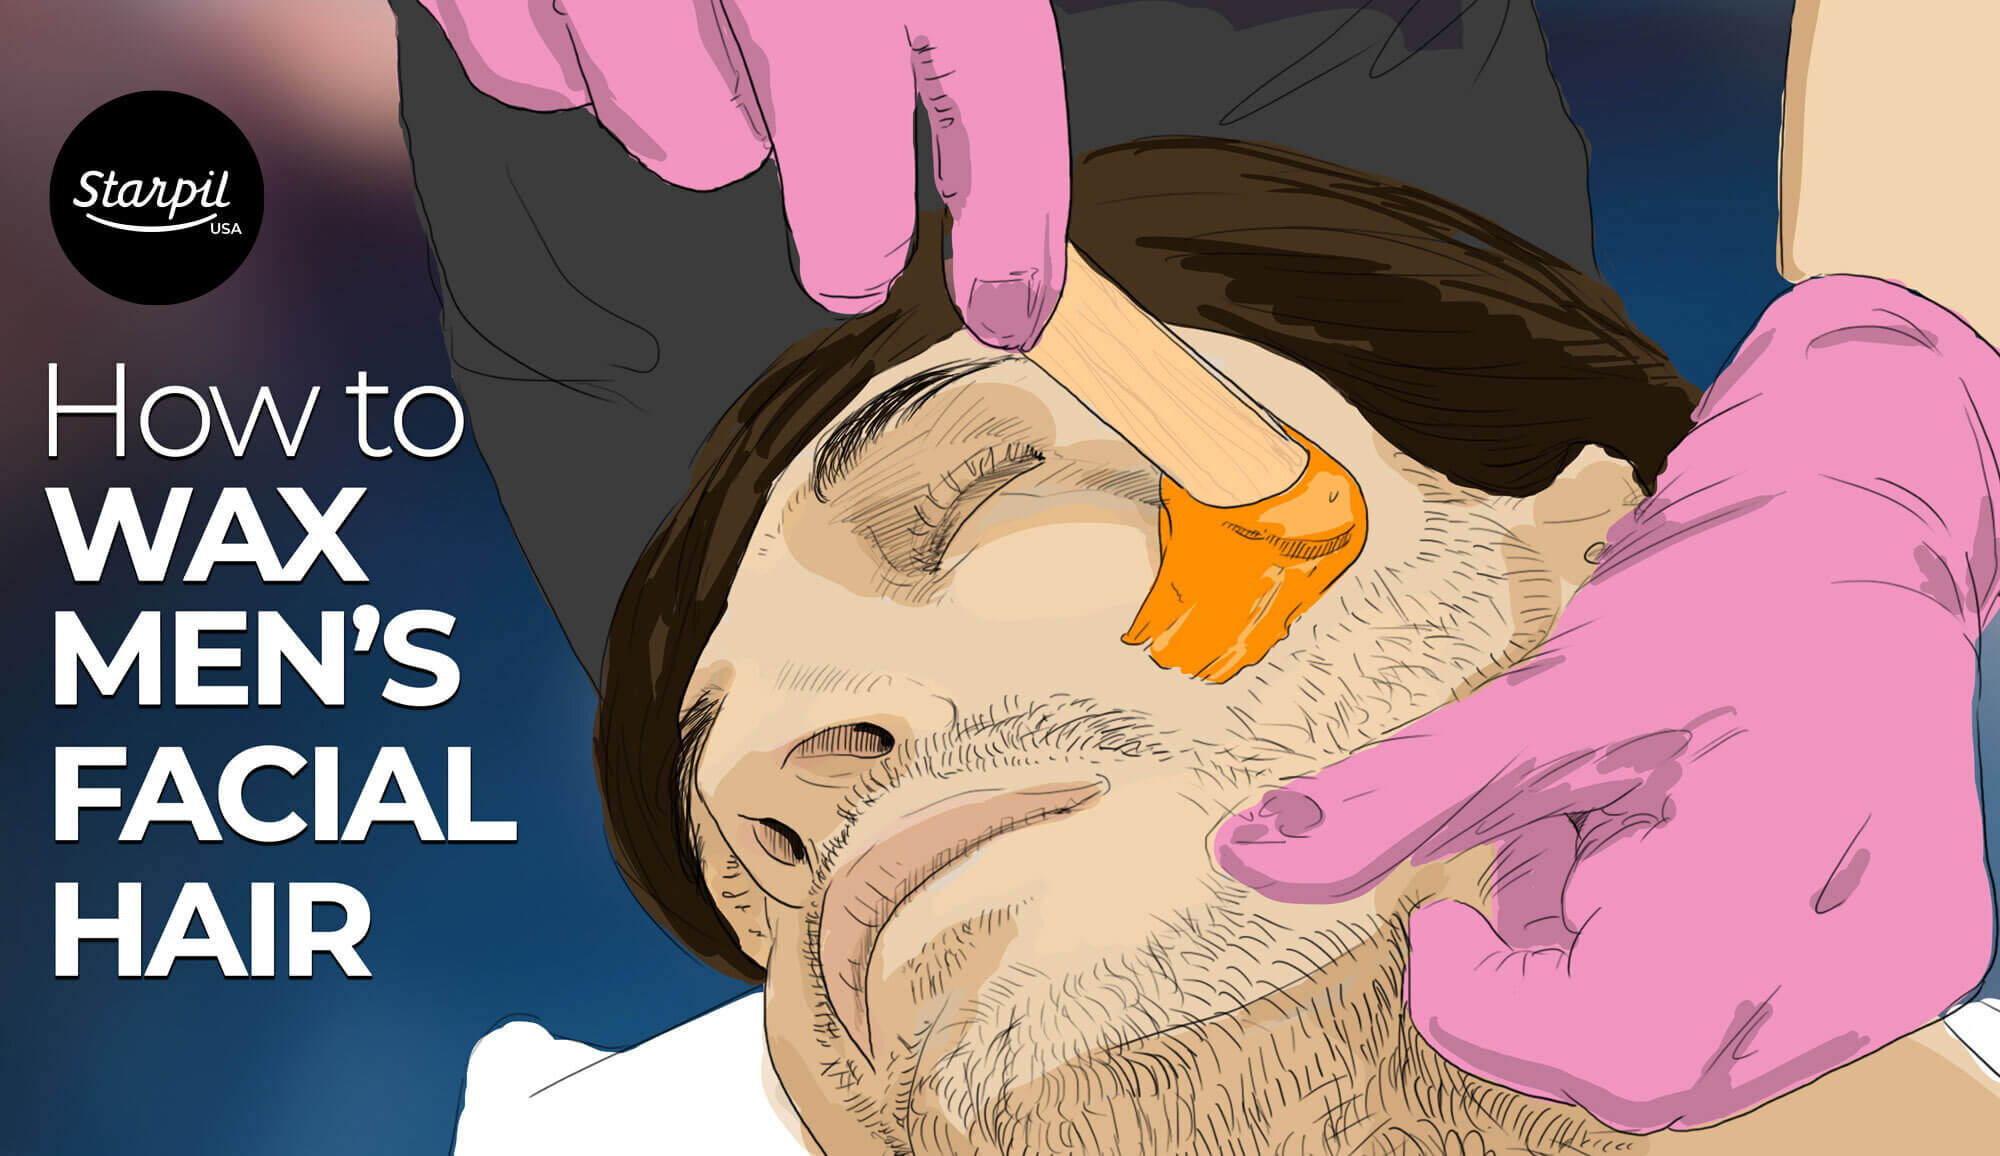 How to Wax Men's Facial Hair